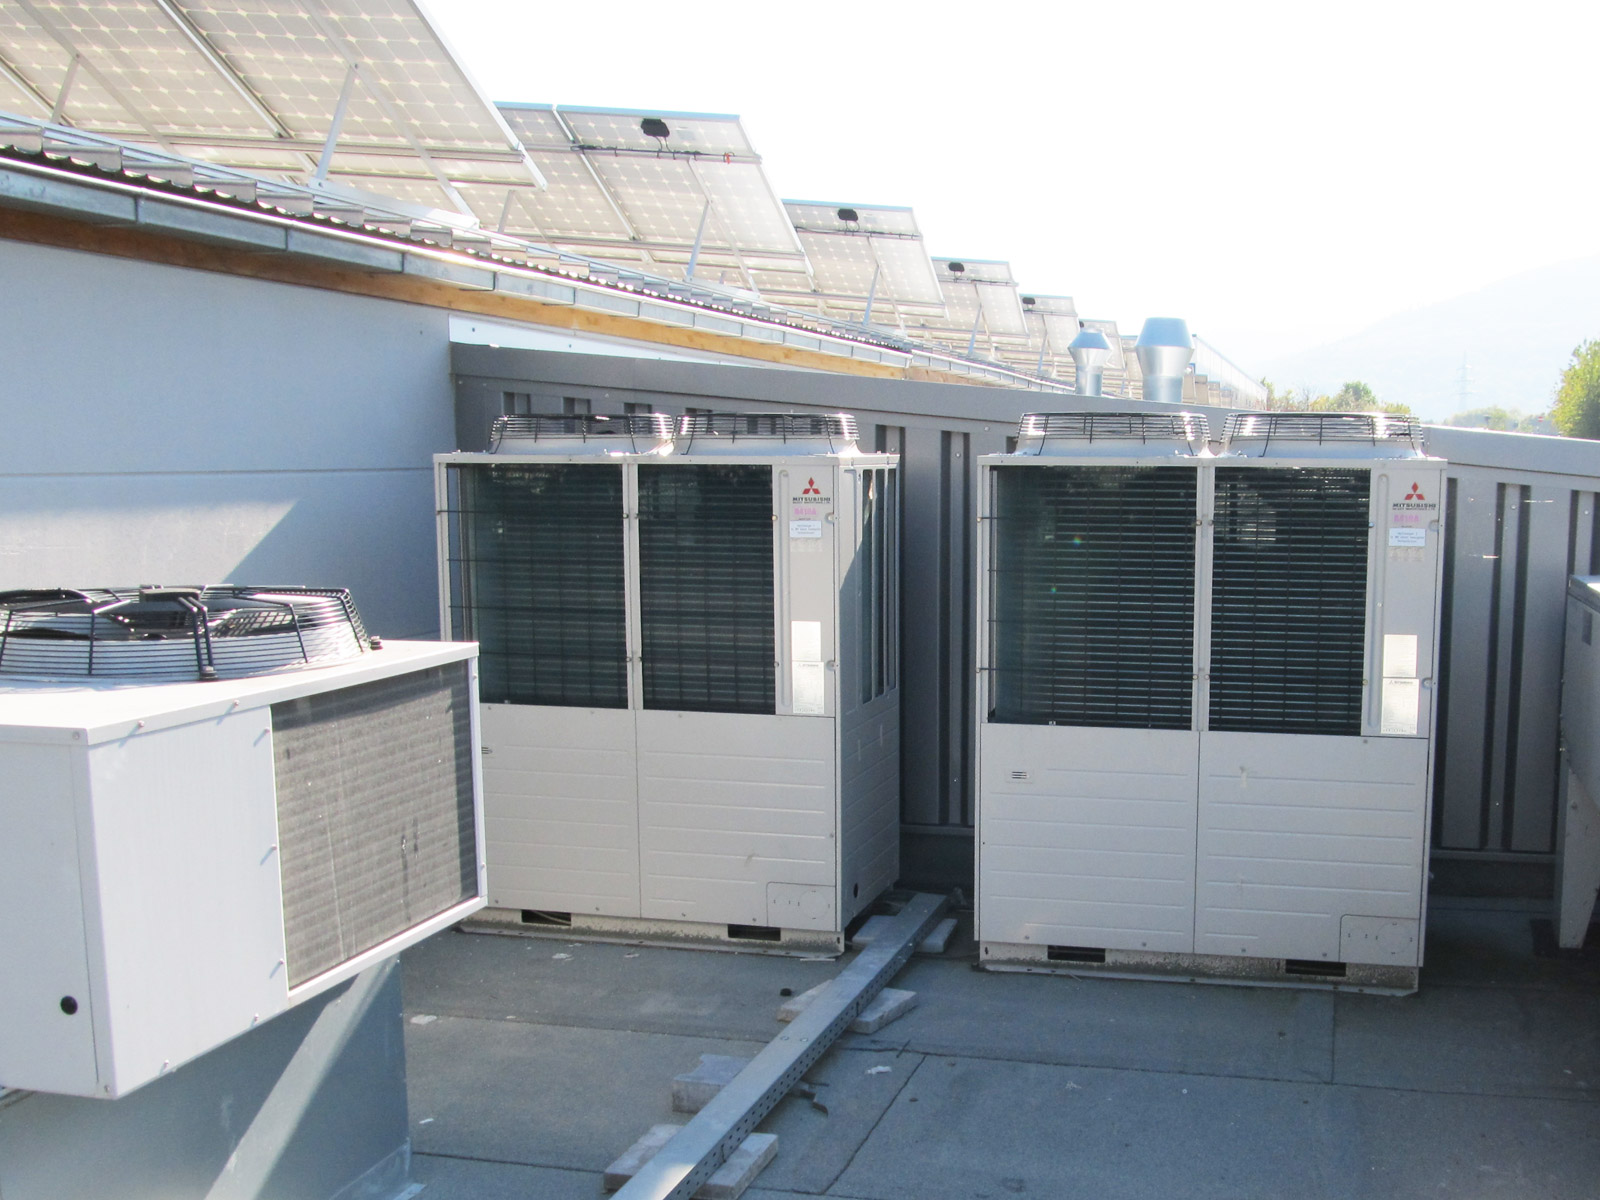 Klimaanlage von Maik Werner - Kälte und Klimatechnik die auf dem Dach einer Rewe Filiale installiert wurde